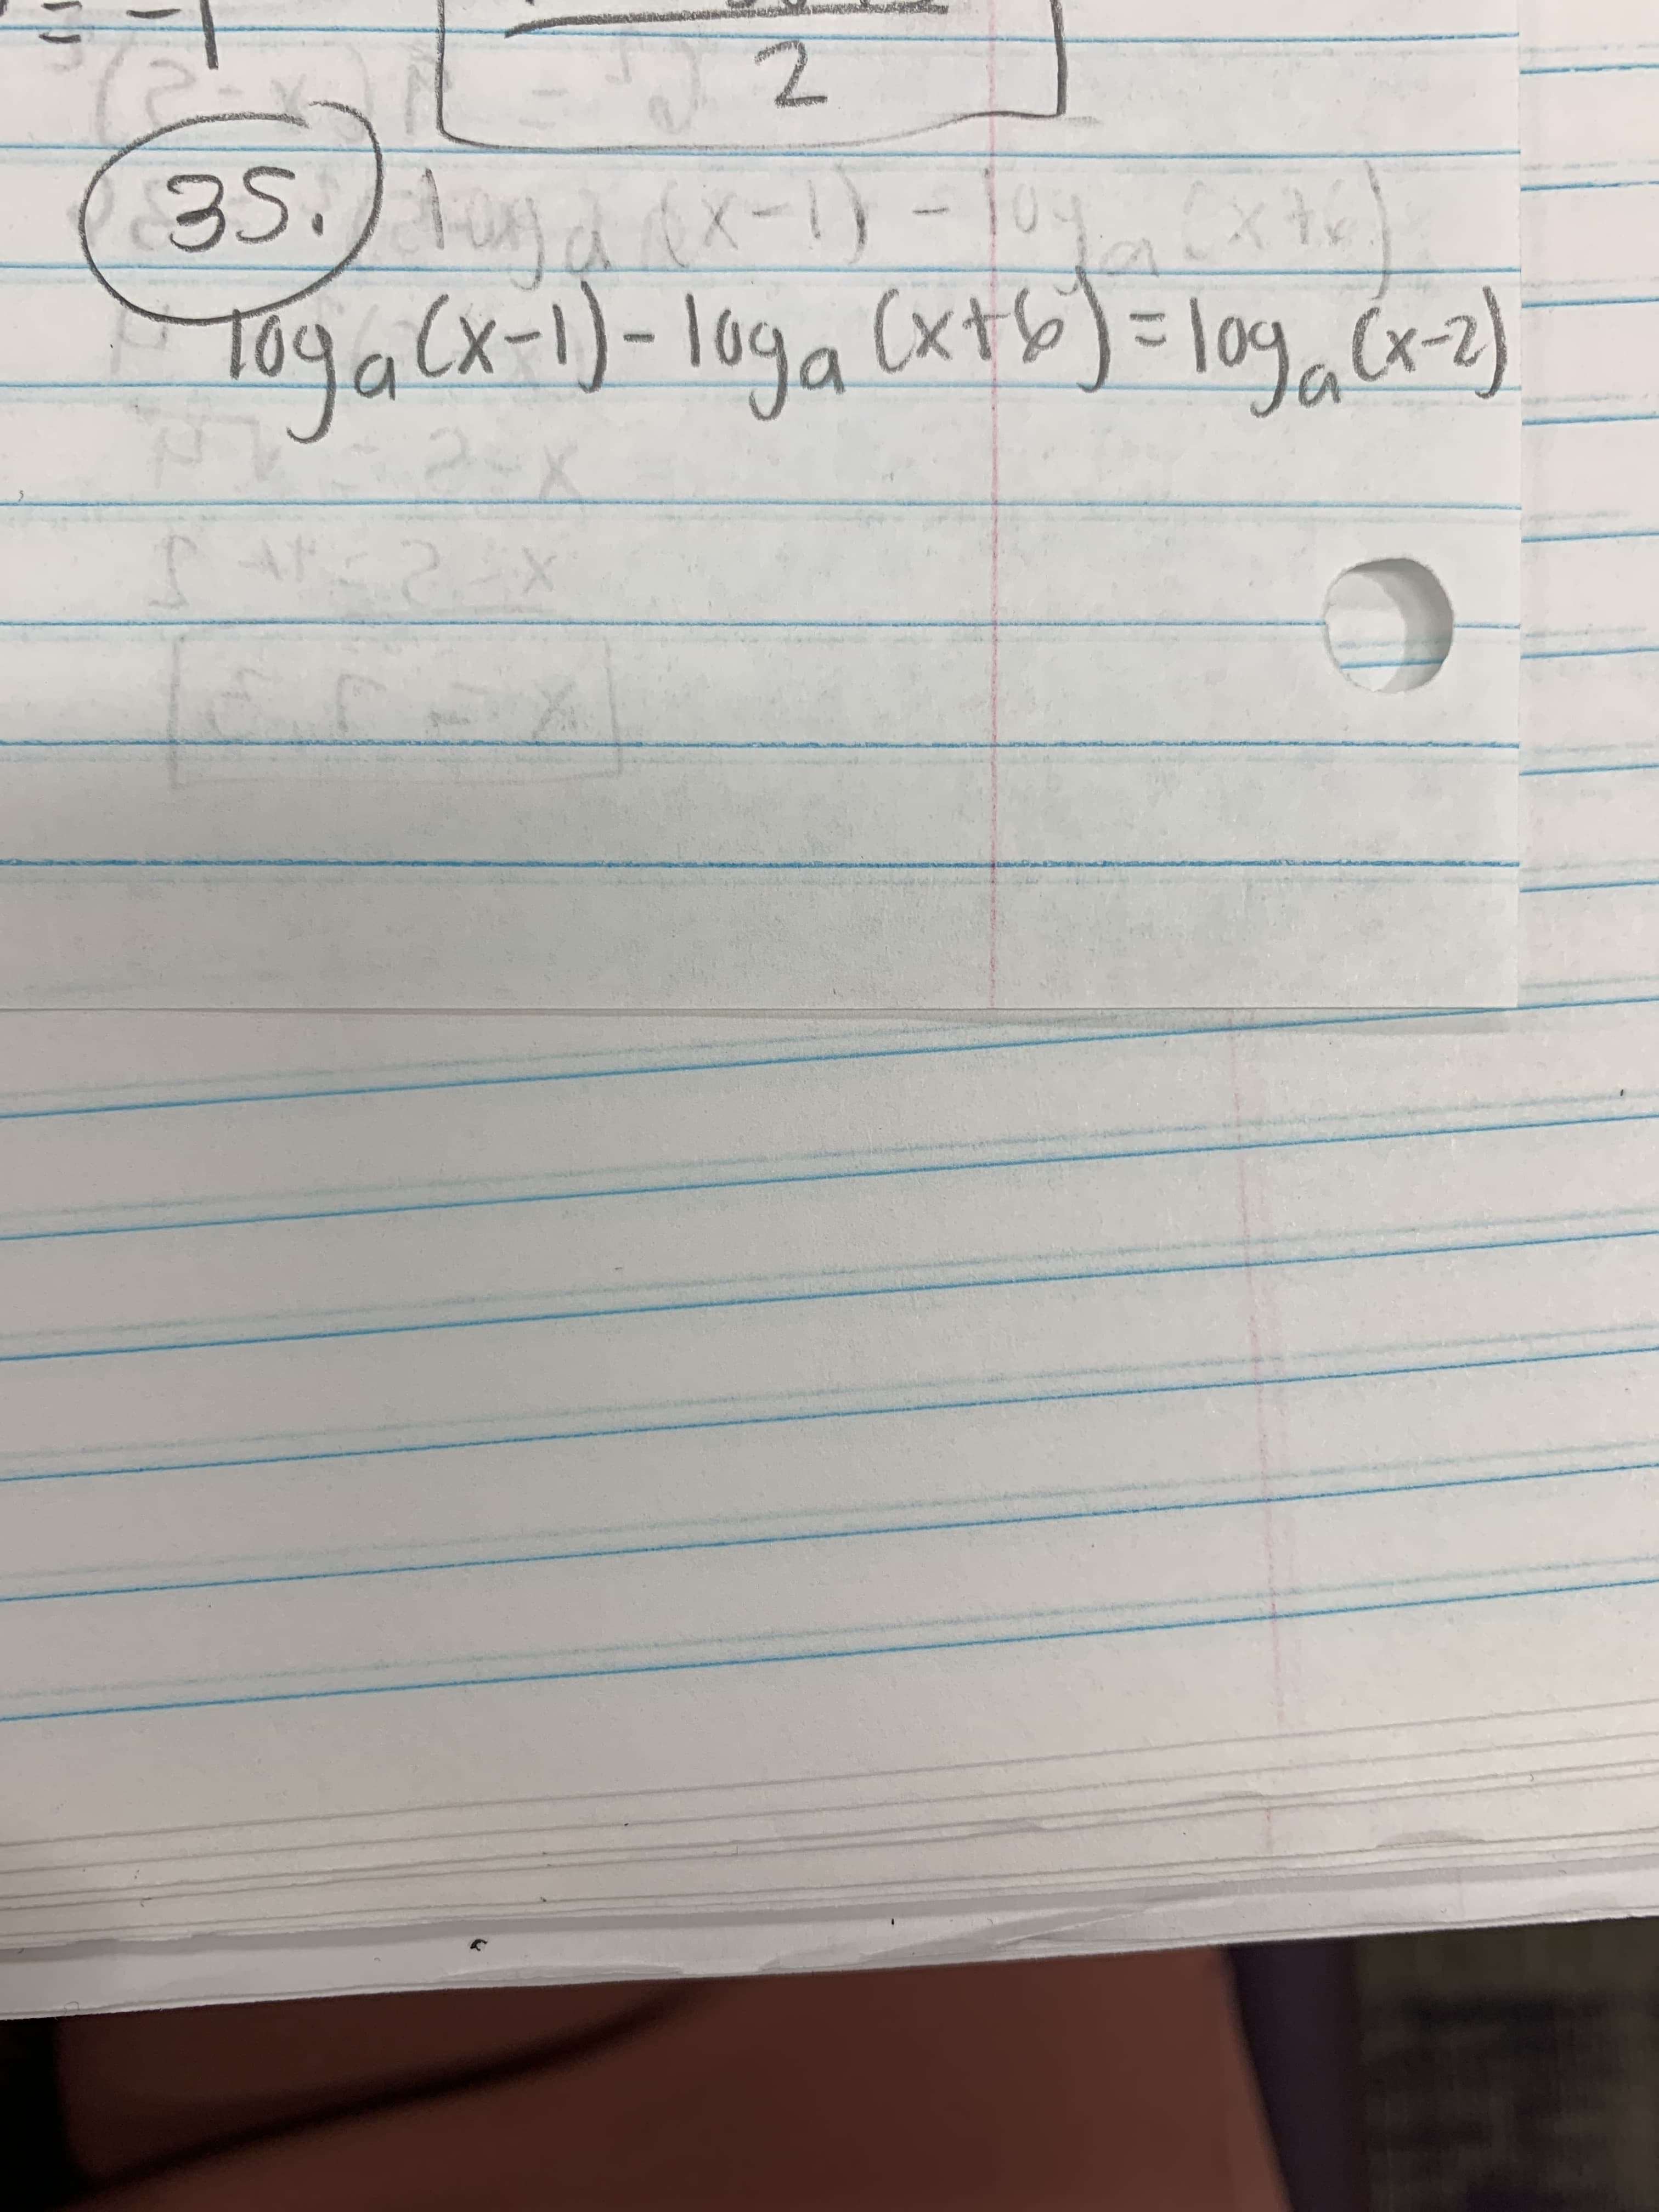 35./ d-1-10.
Toga(x-1)-10ga (xtb)) = l09.Cx2)
